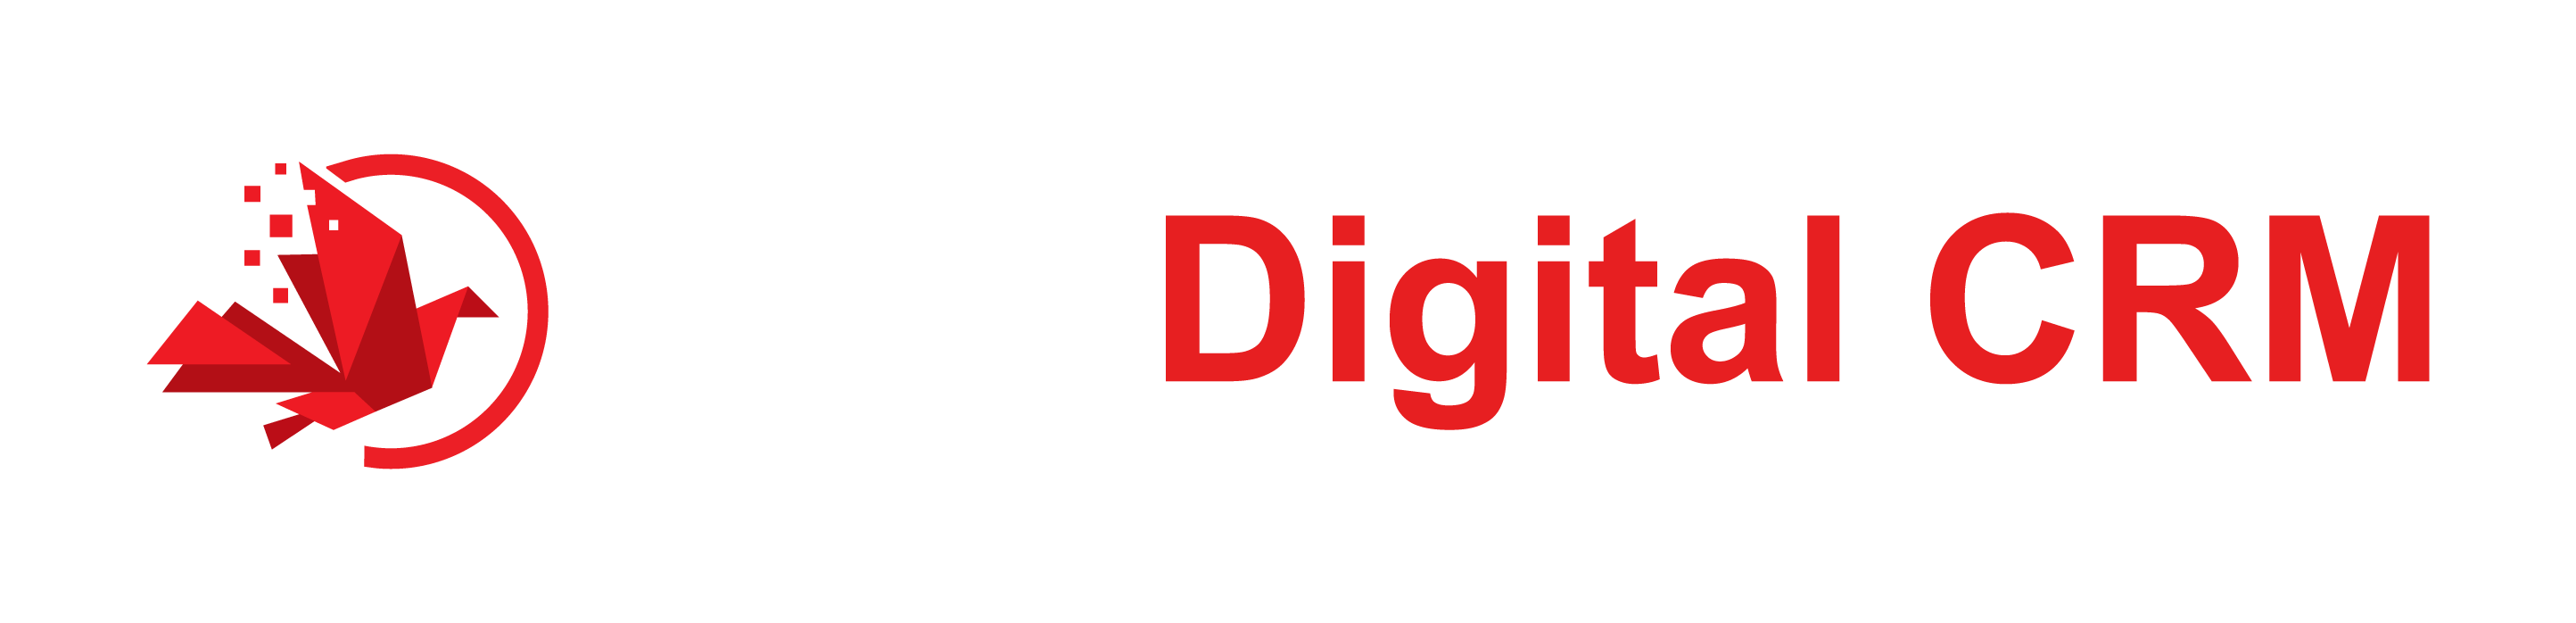 KML Digital